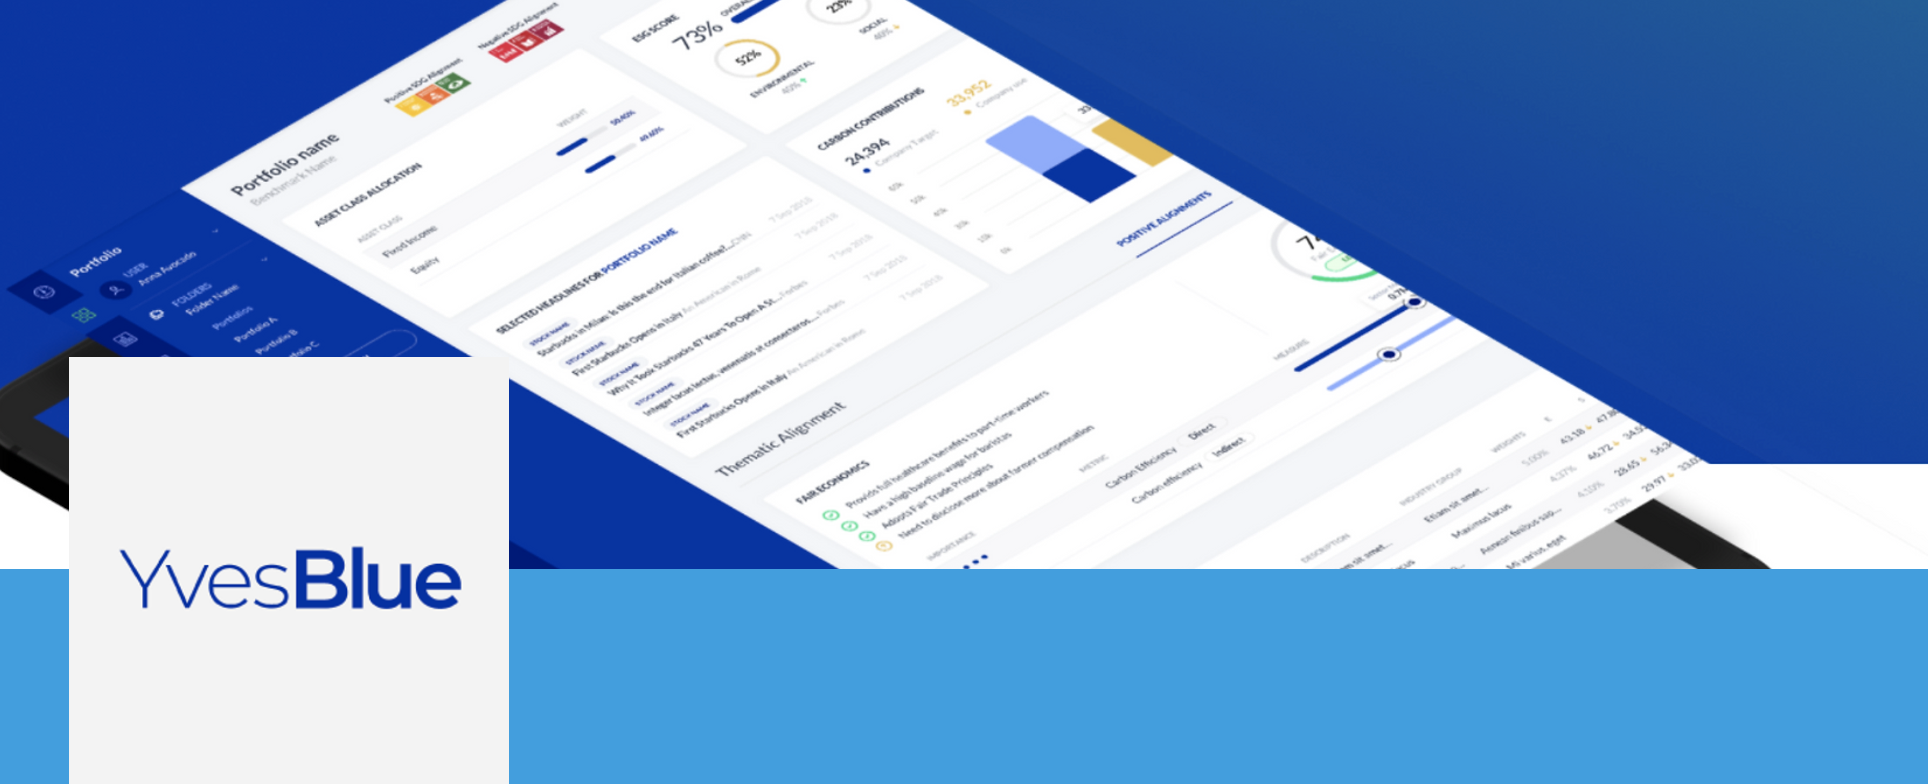 YvesBlue Core suite of analytics portfolio page